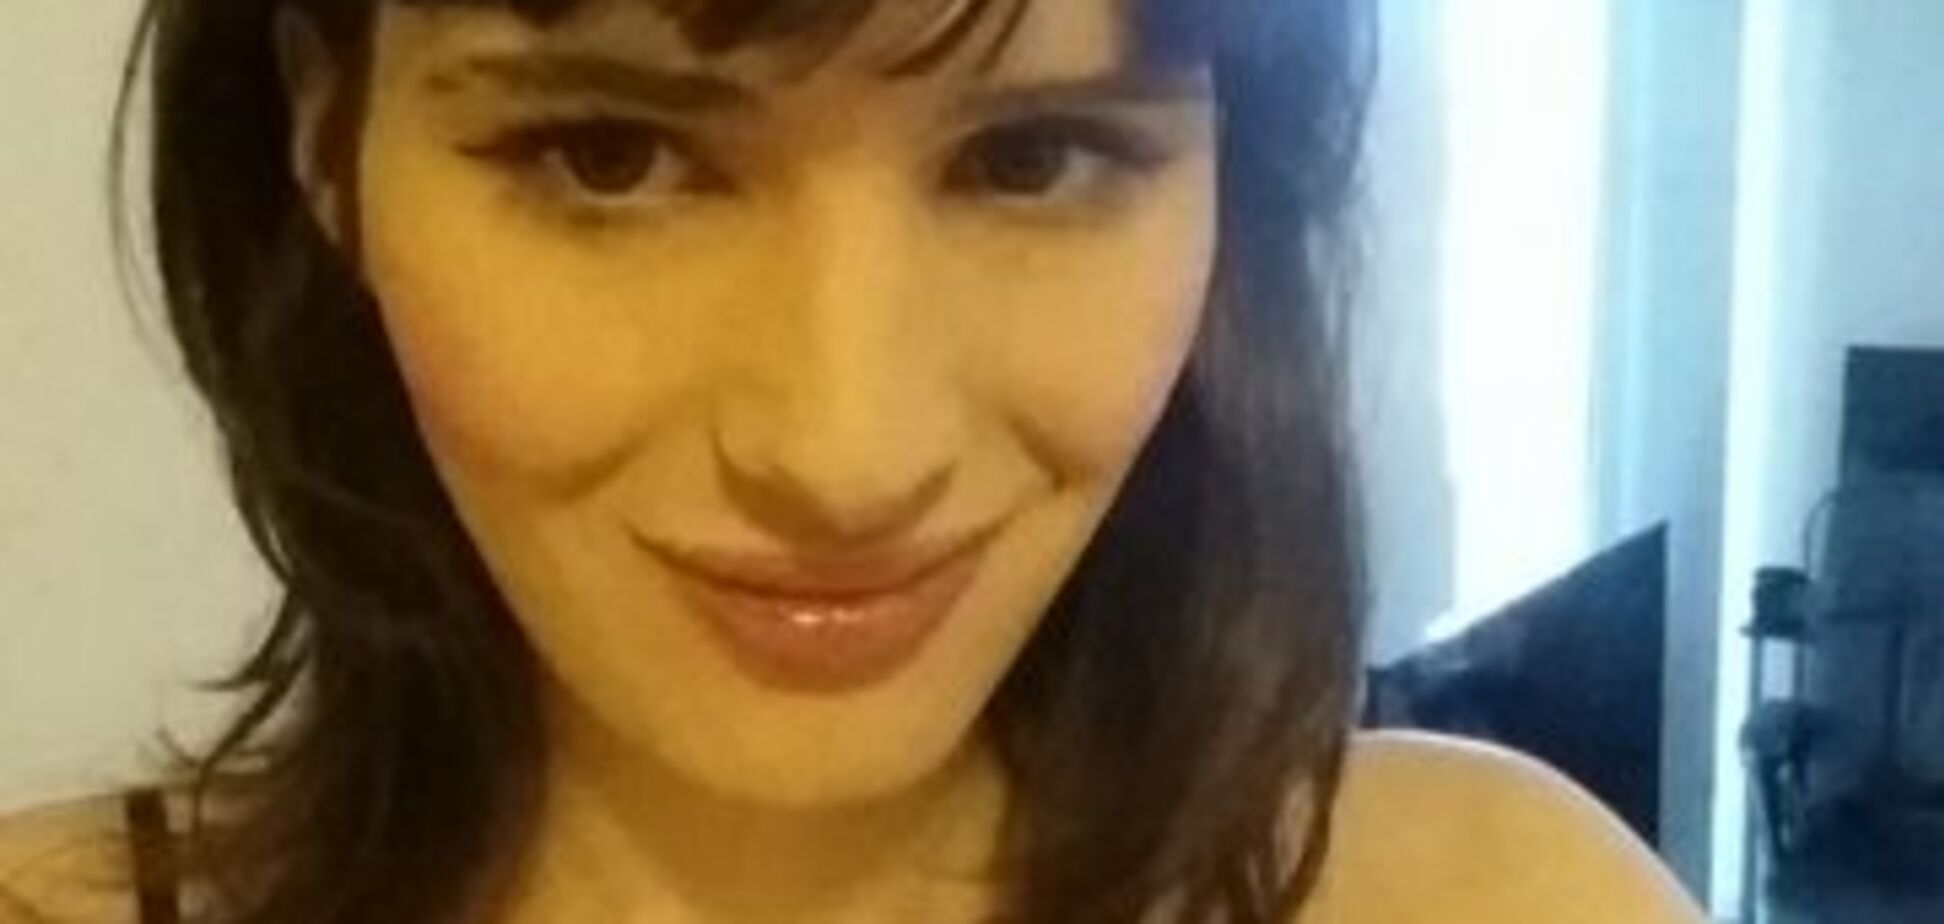 'Заради щастя треба ризикувати': дівчина-трансгендер із США вразила фото свого перевтілення